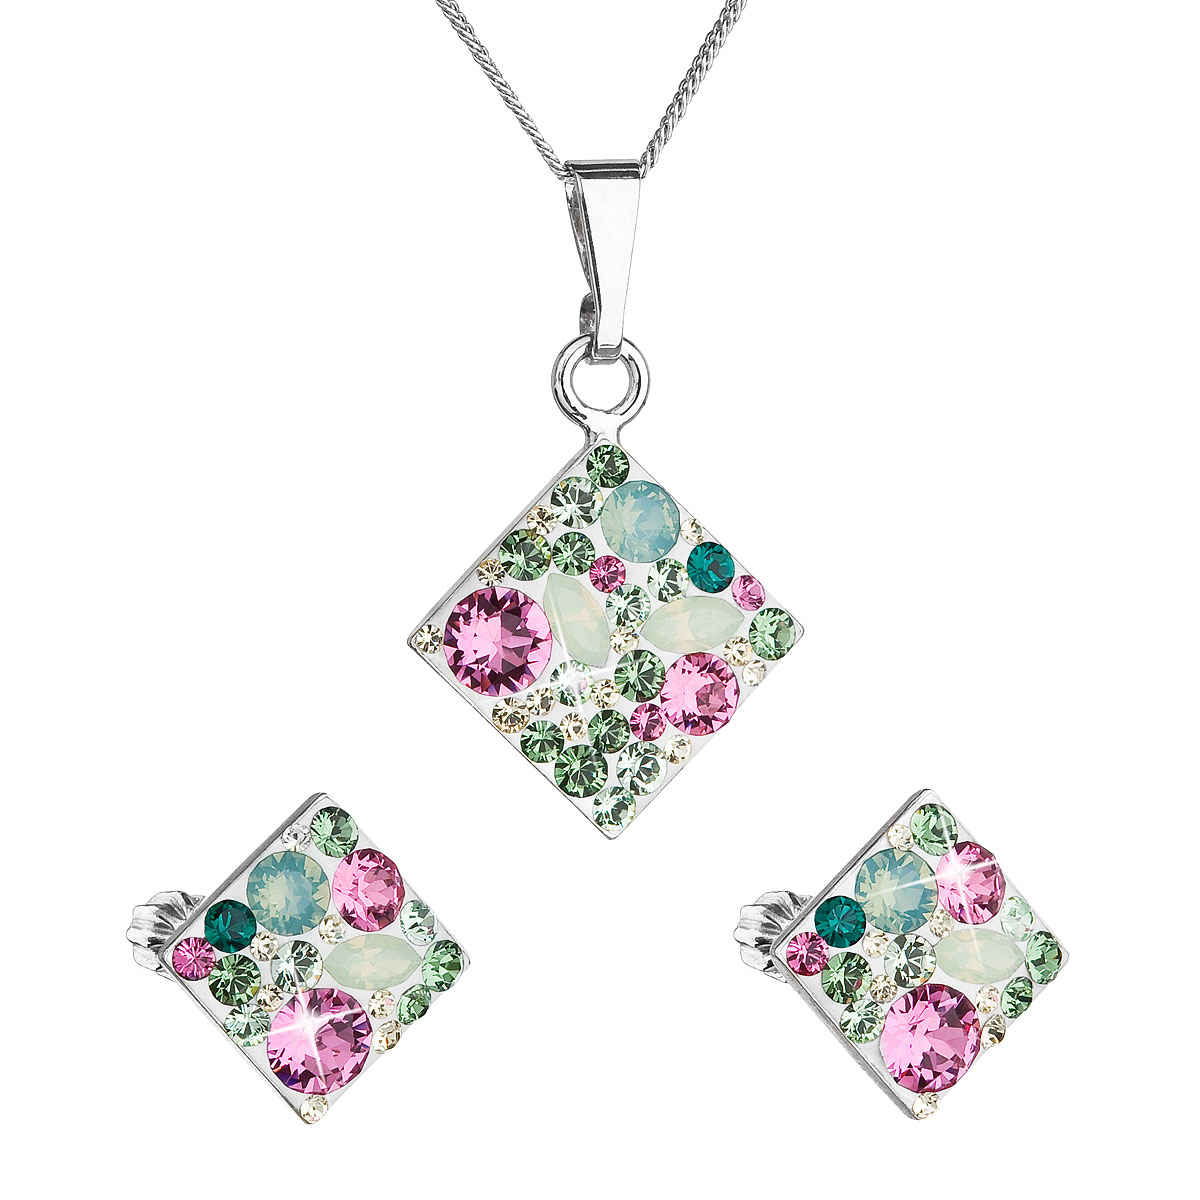 Evolution Group Sada šperků s krystaly Swarovski náušnice, řetízek a přívěsek zelený kosočtverec 39126.3 chrysolite